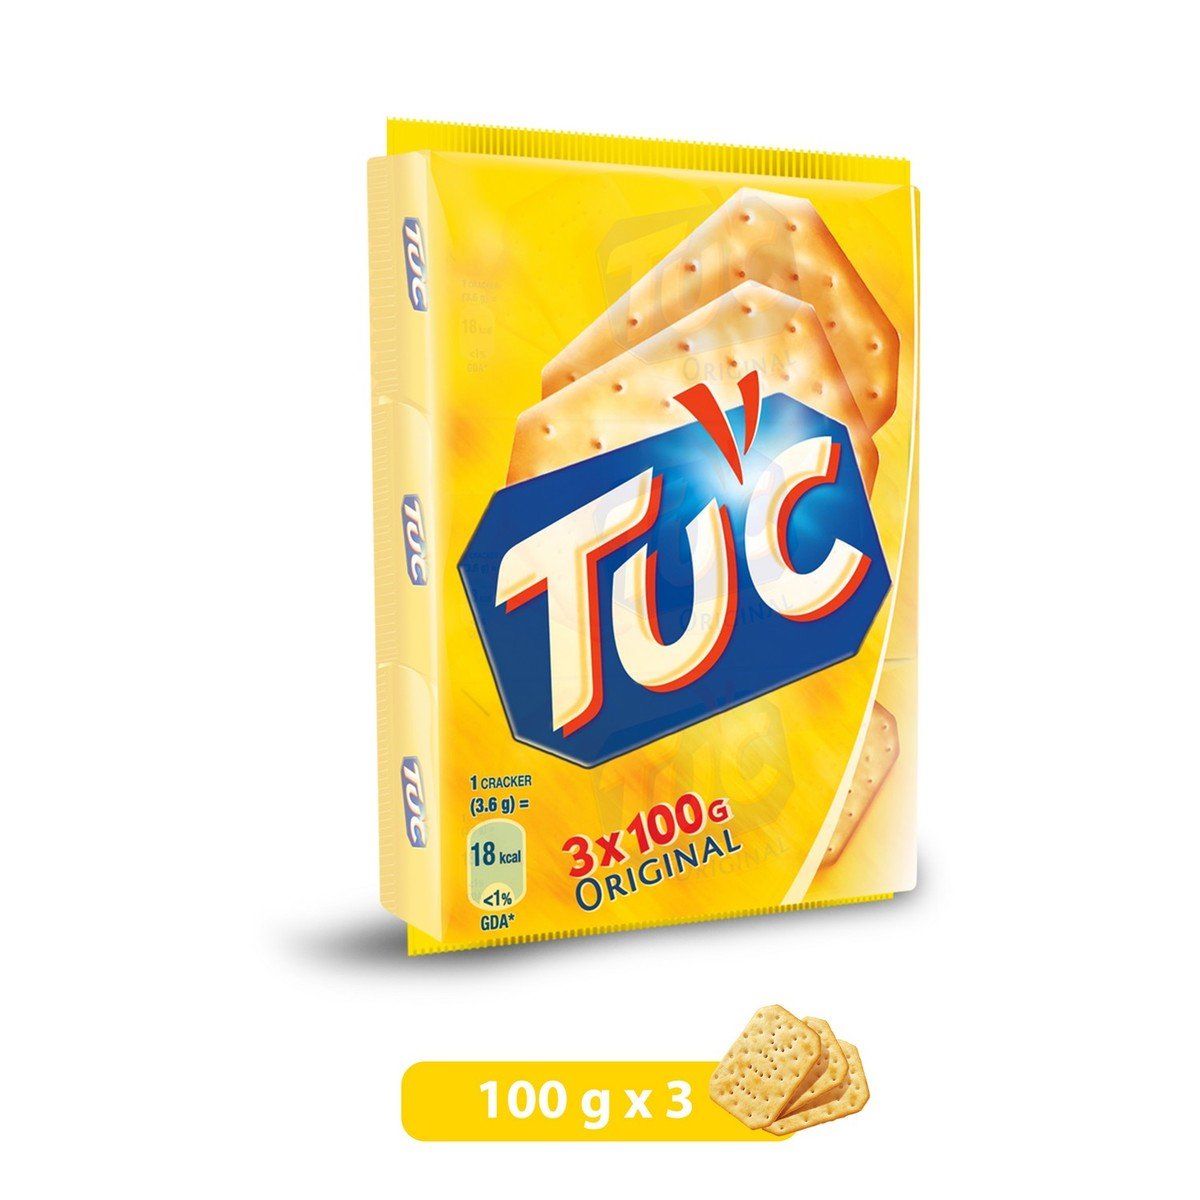 Tuc Original Crackers 300g